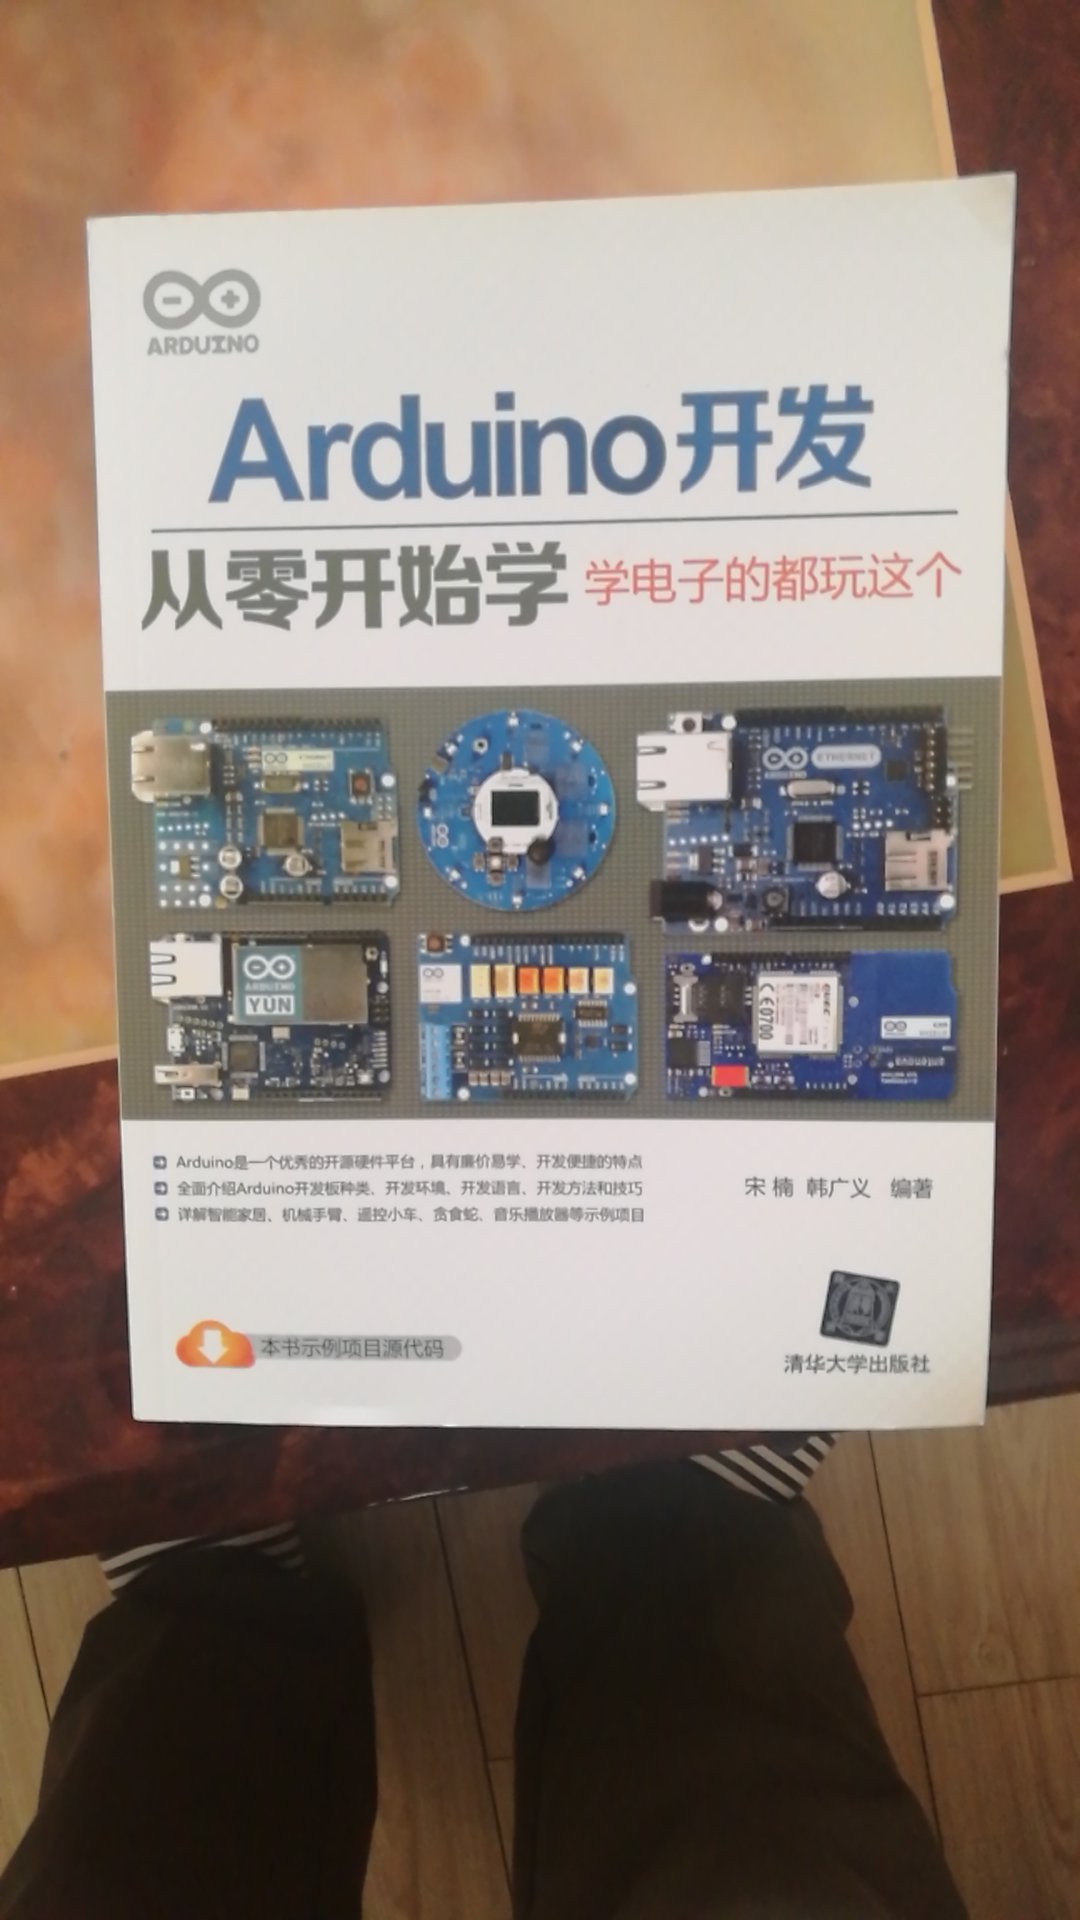 一直从事电子技术类的相关工作，但对Arduino却并不熟悉，因此相买本书看看，好好了解一下。书才送到，只翻了一下目录，书的内容还没仔细看，暂时先好评，等看后再补评。